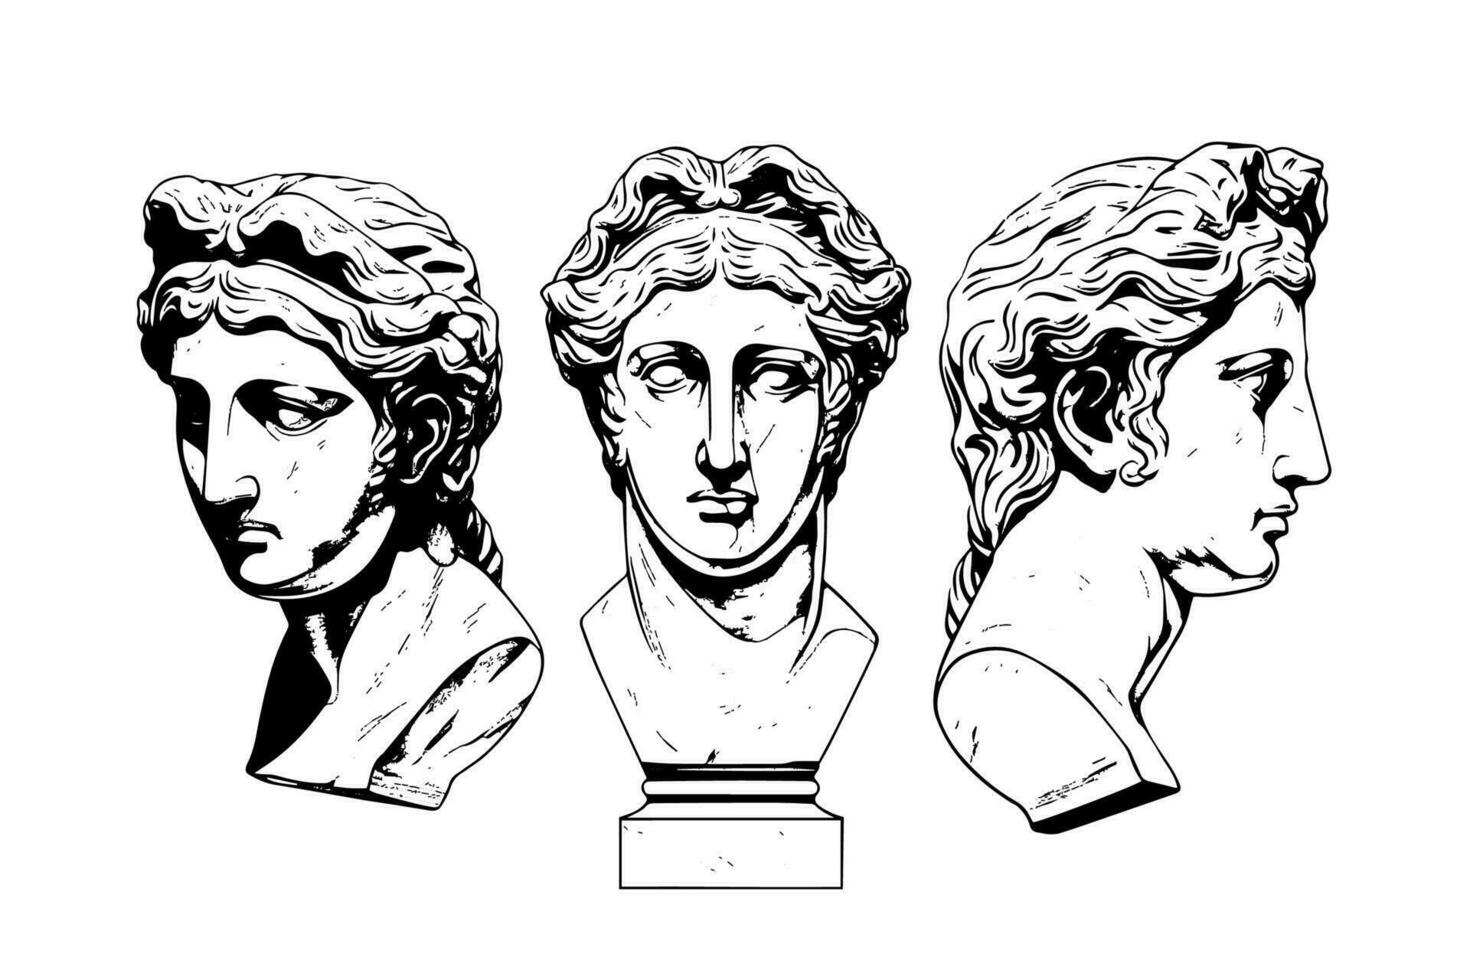 impostato di antico statua testa di greco scultura schizzo incisione stile vettore illustrazione pacchetto.